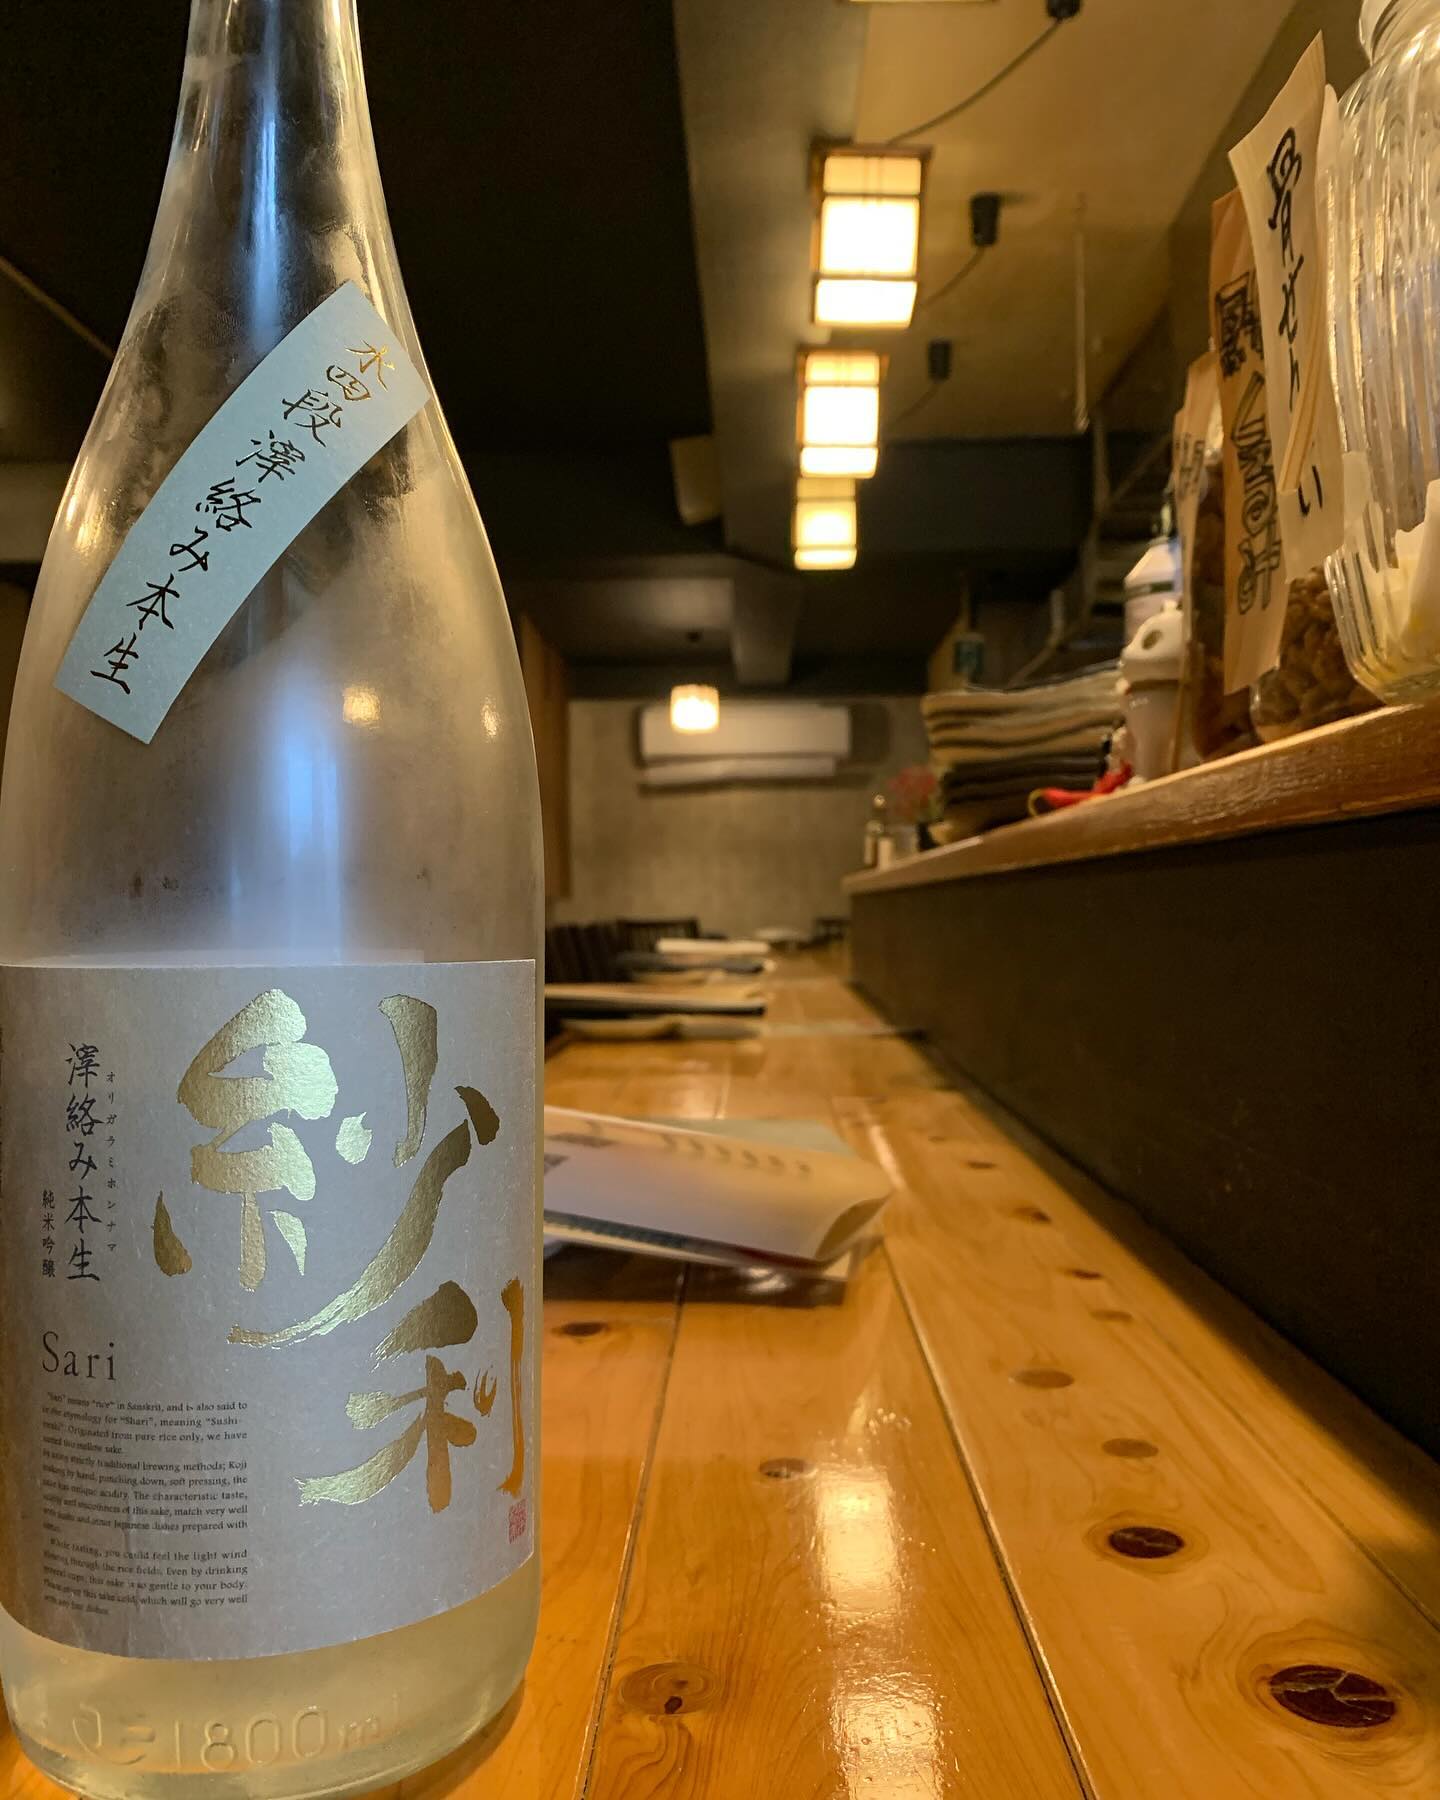 本日の日本酒紹介「紗利」
ホロホロと口の中でほどけるさまや、
寿司に和合するため、
芸術の域にまで削ぎ落されたスシ飯の如き佇まいは
それこそ、「シャリ」を彷彿とさせる。
何と和合させていただくか楽しみになる酒だ。
ぜひうちのお刺身と合わせて飲んで見てください
  #